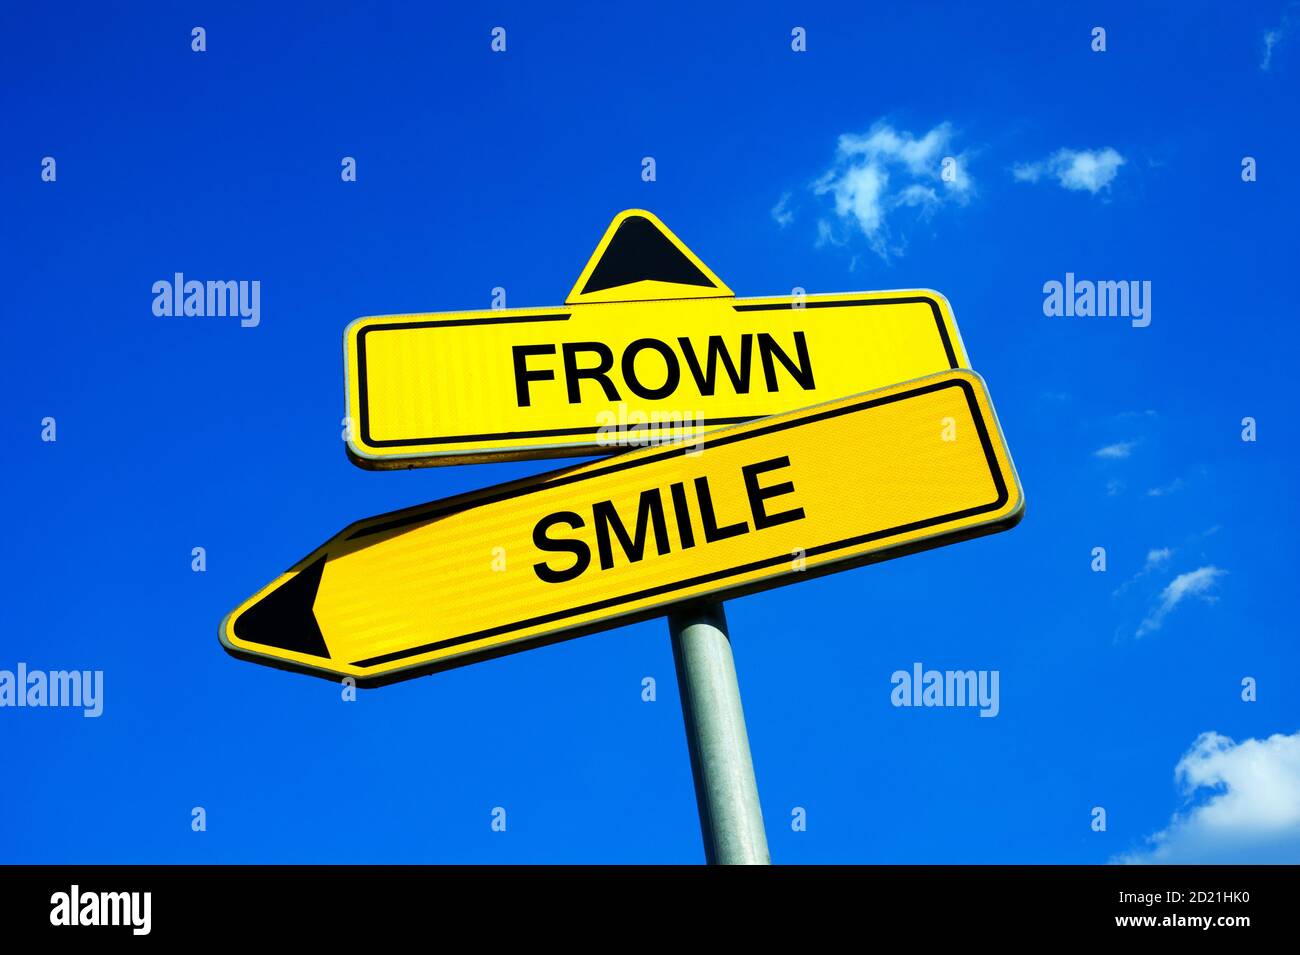 Frown ou Smile - signalisation routière avec deux options - être aimable et joyeux personne avec la personnalité positive vs être négatif growler, et grouiller avec negat Banque D'Images